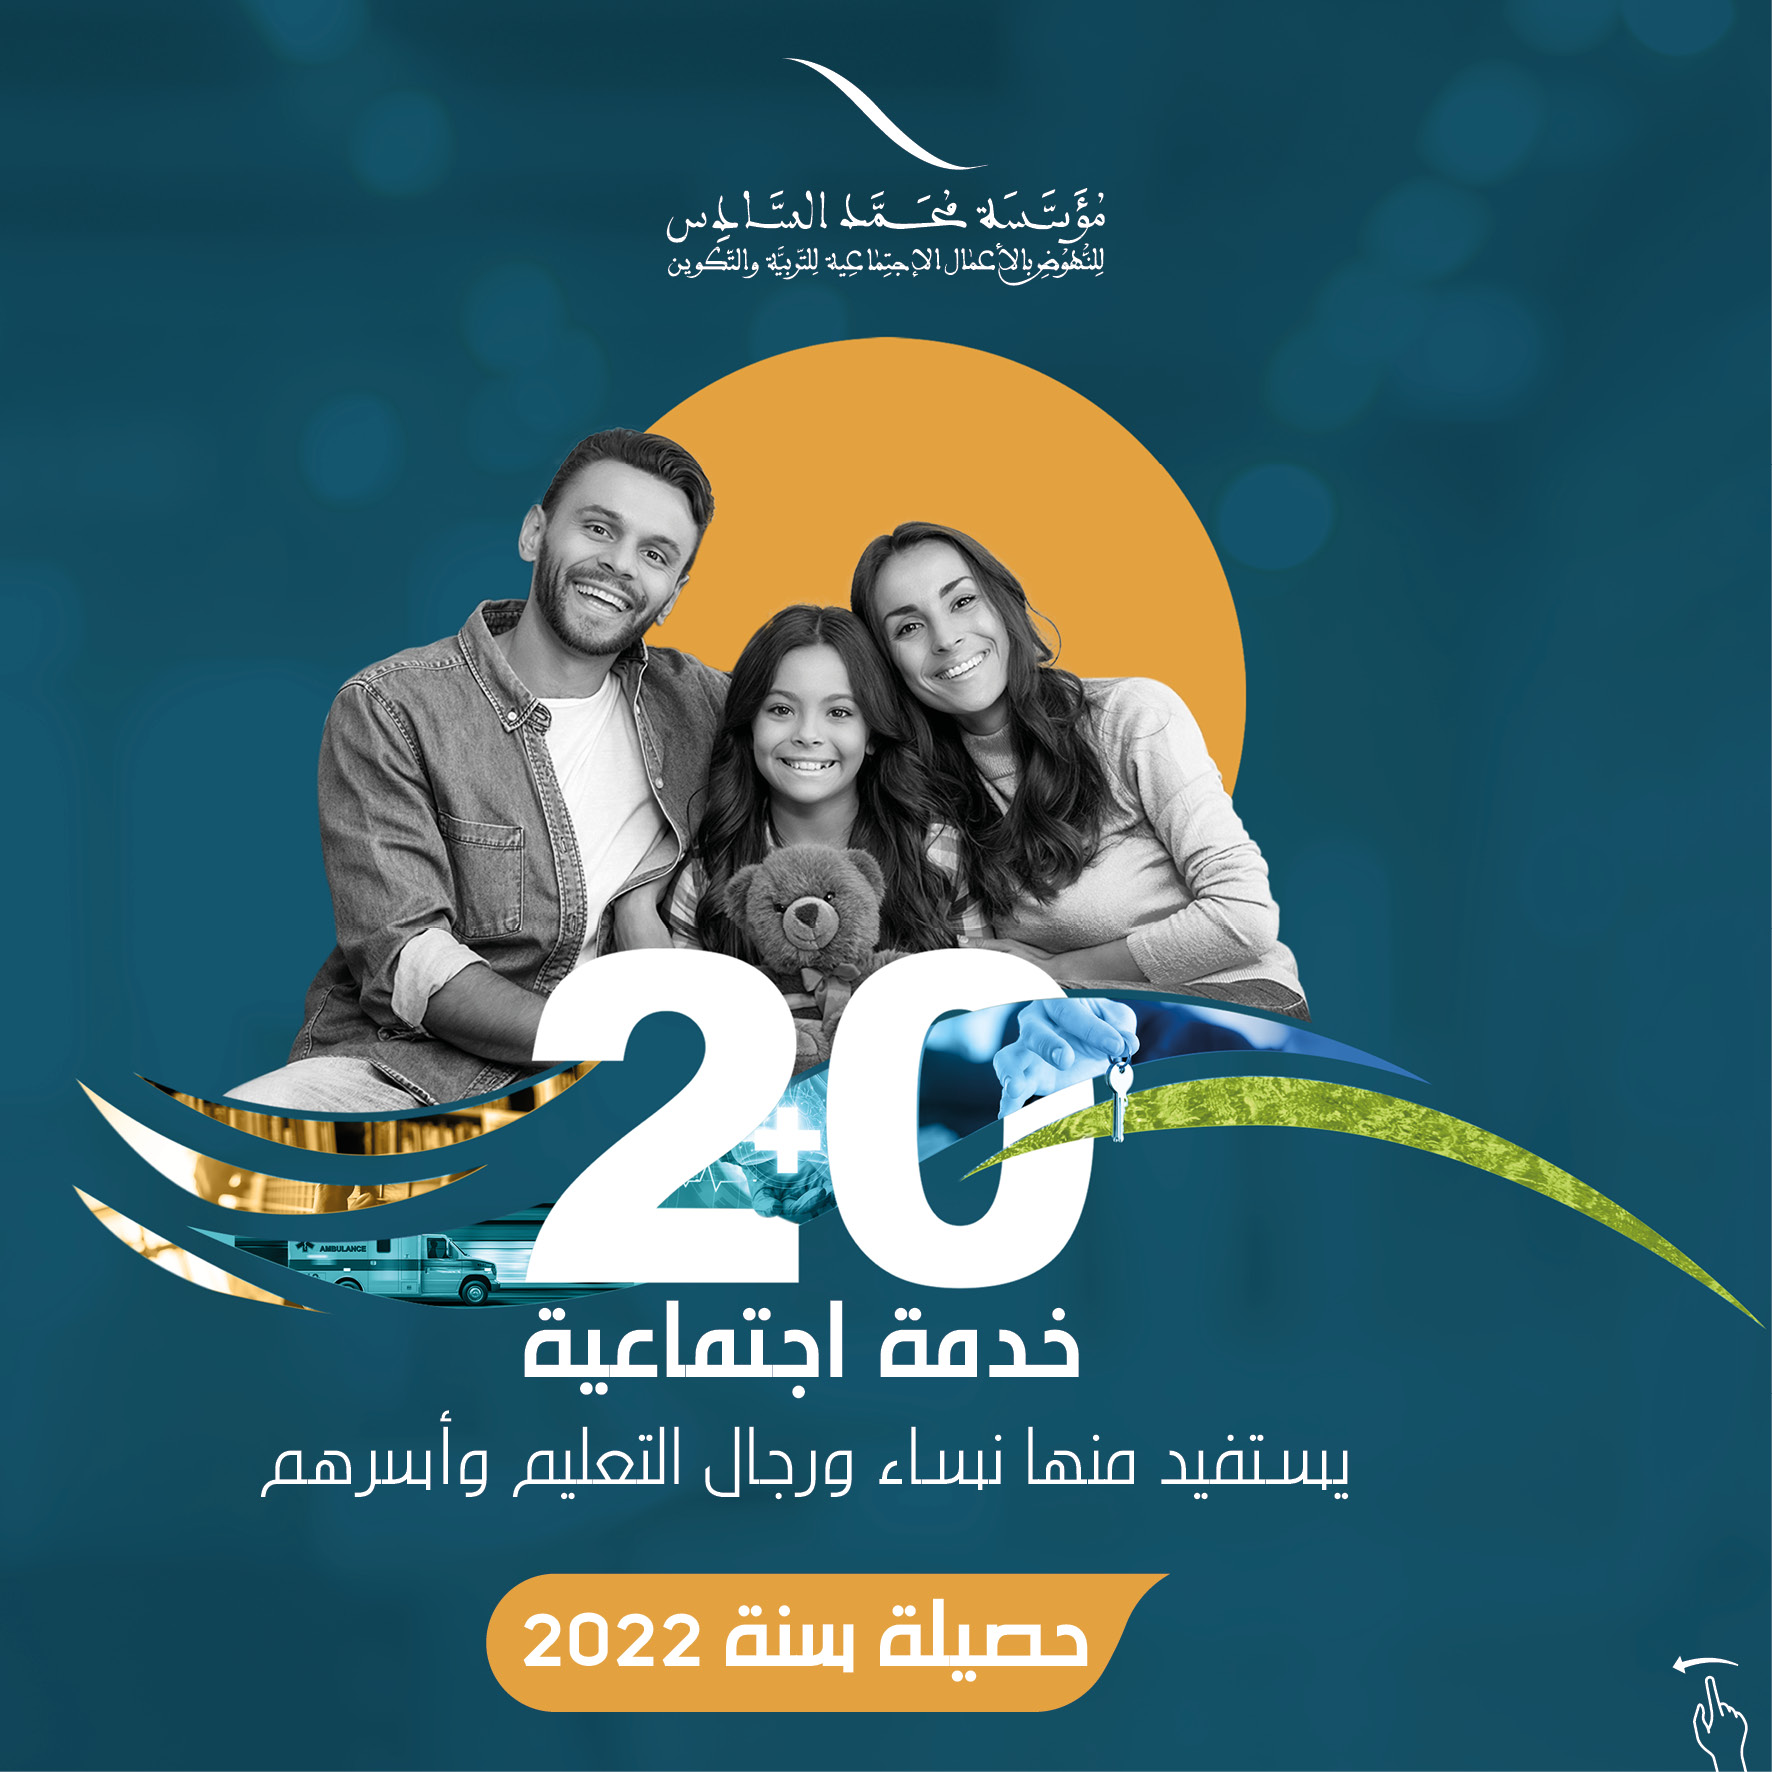  20 خدمة اجتماعية يستفيد منها نساء ورجال التعليم وأسرهم حصيلة سنة 2022